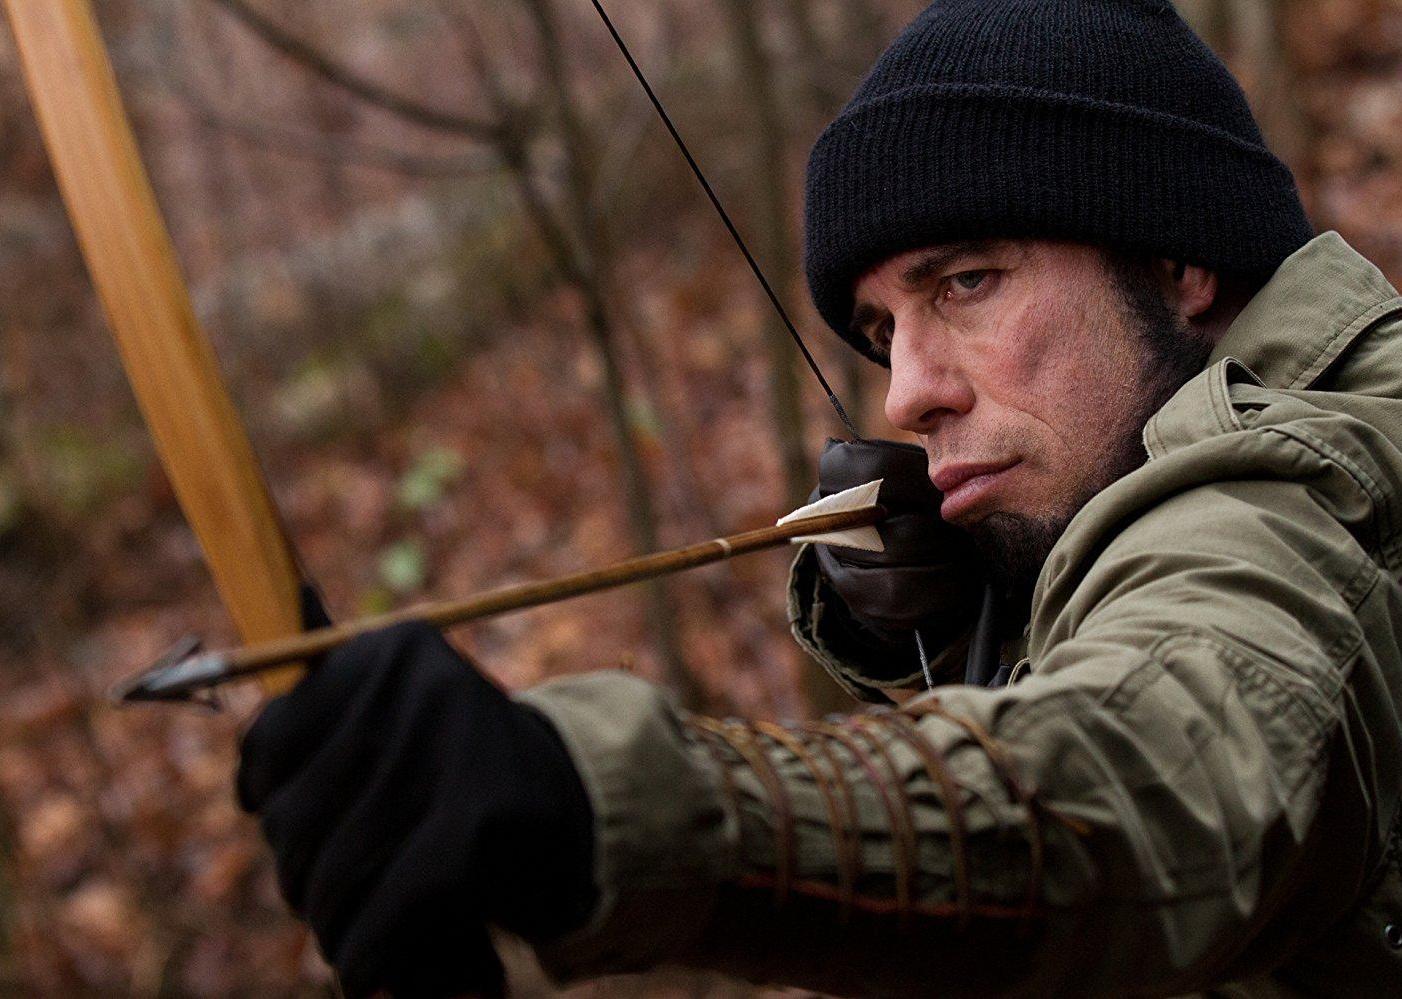 John Travolta shooting a bow and arrow.